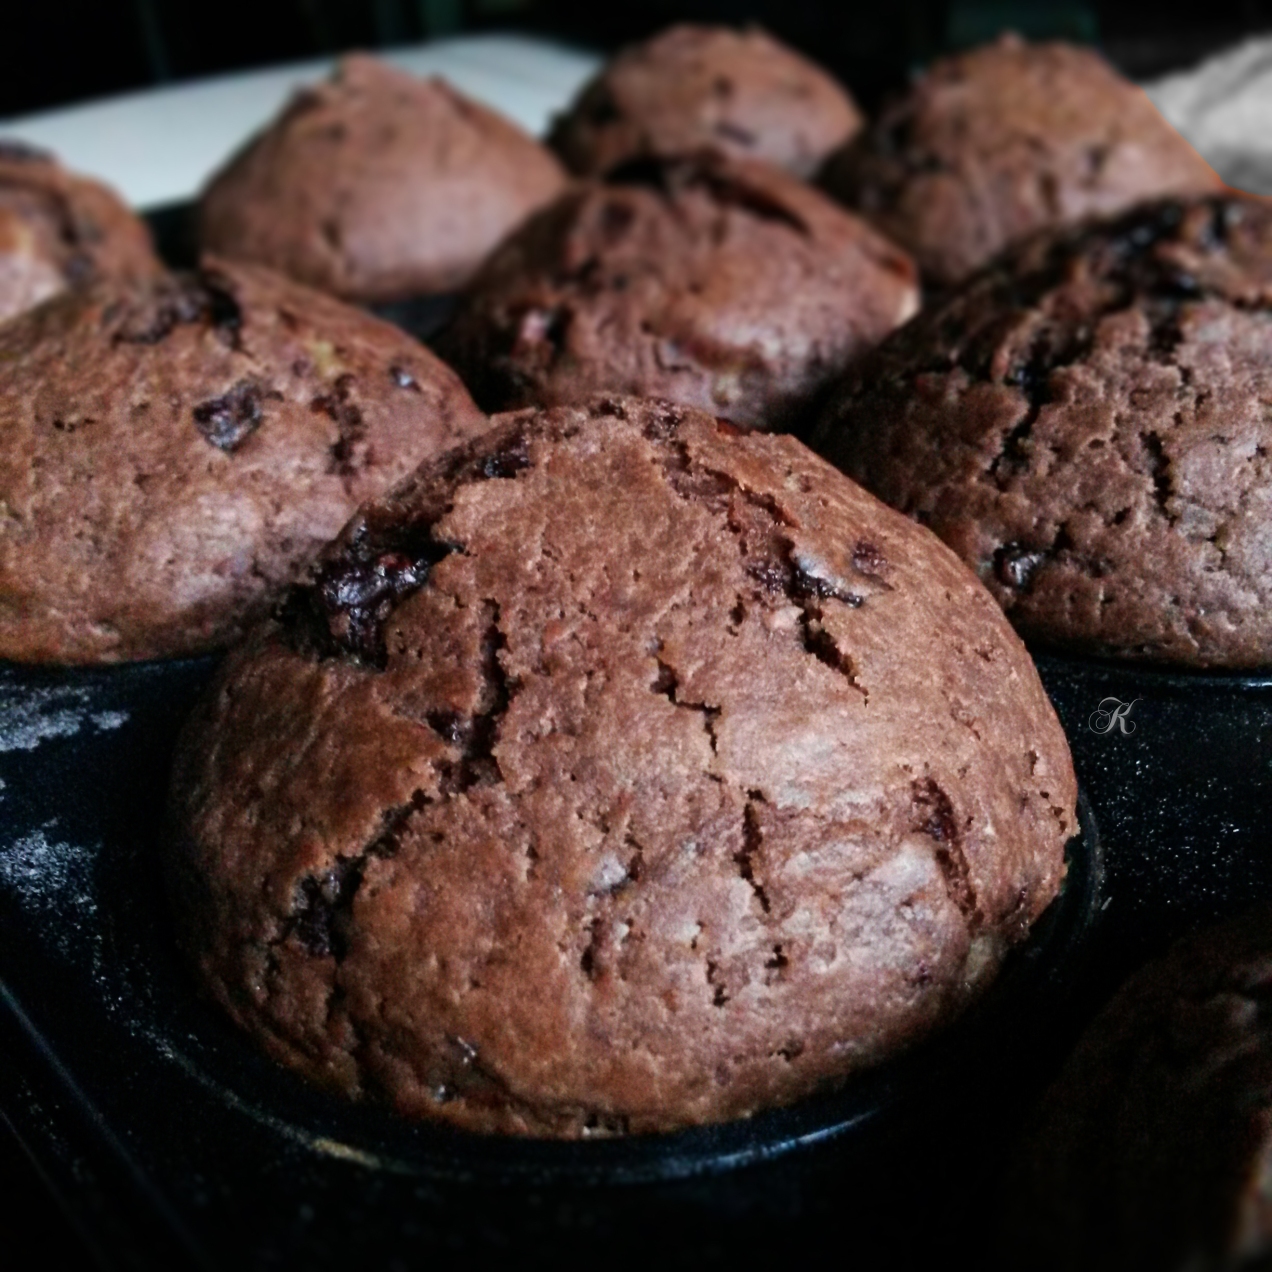 Chocolate banana muffins